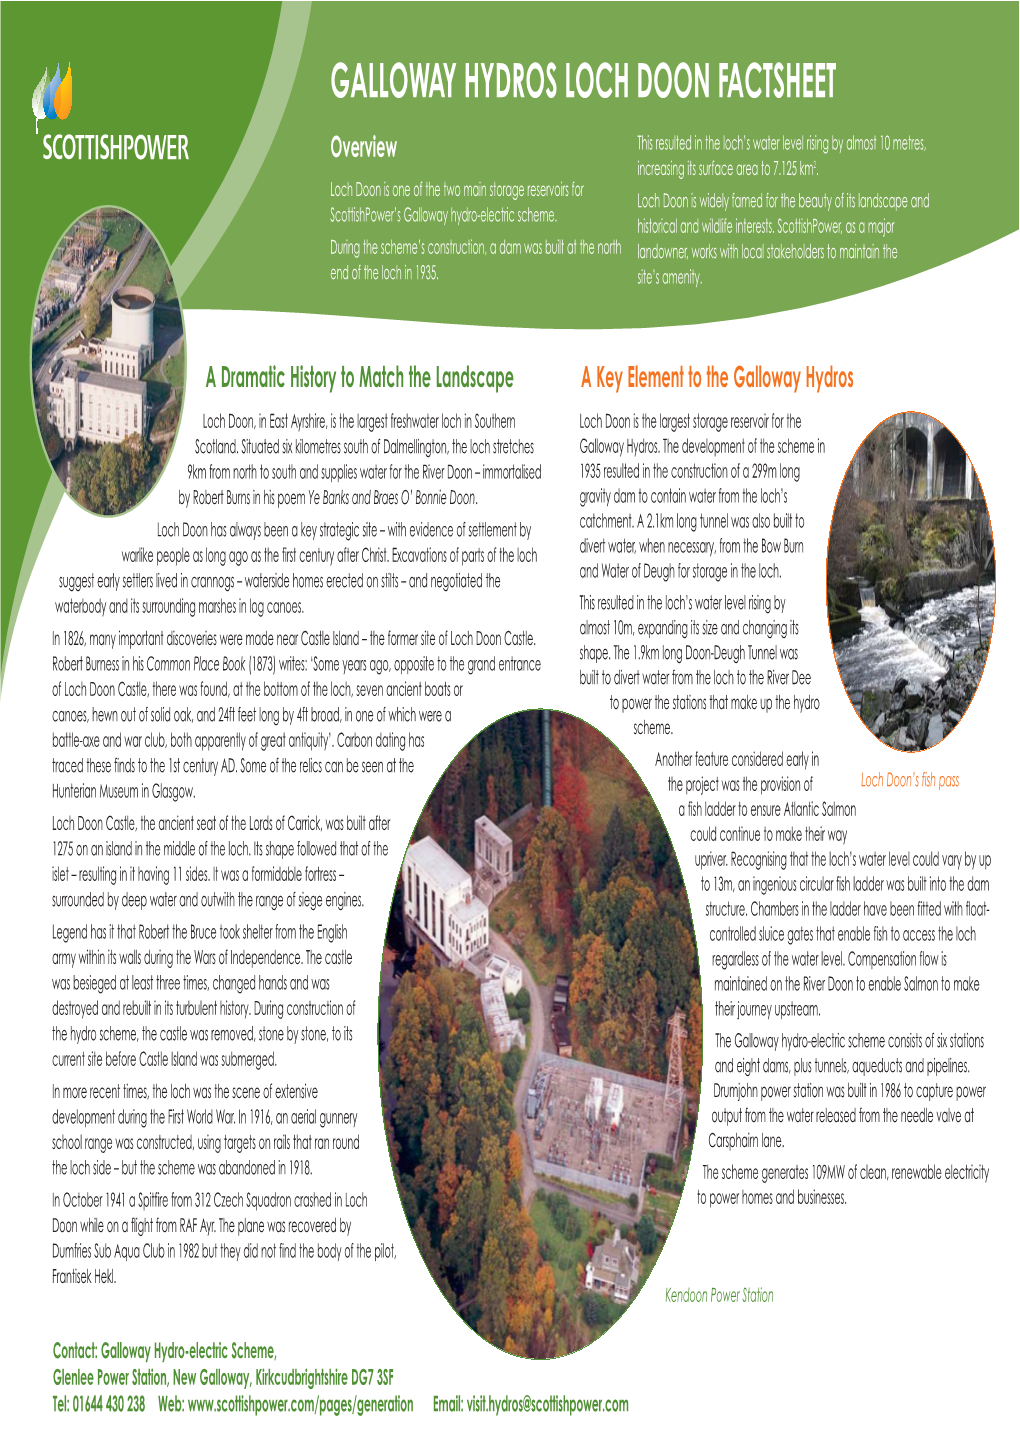 Galloway Hydros Loch Doon Factsheet